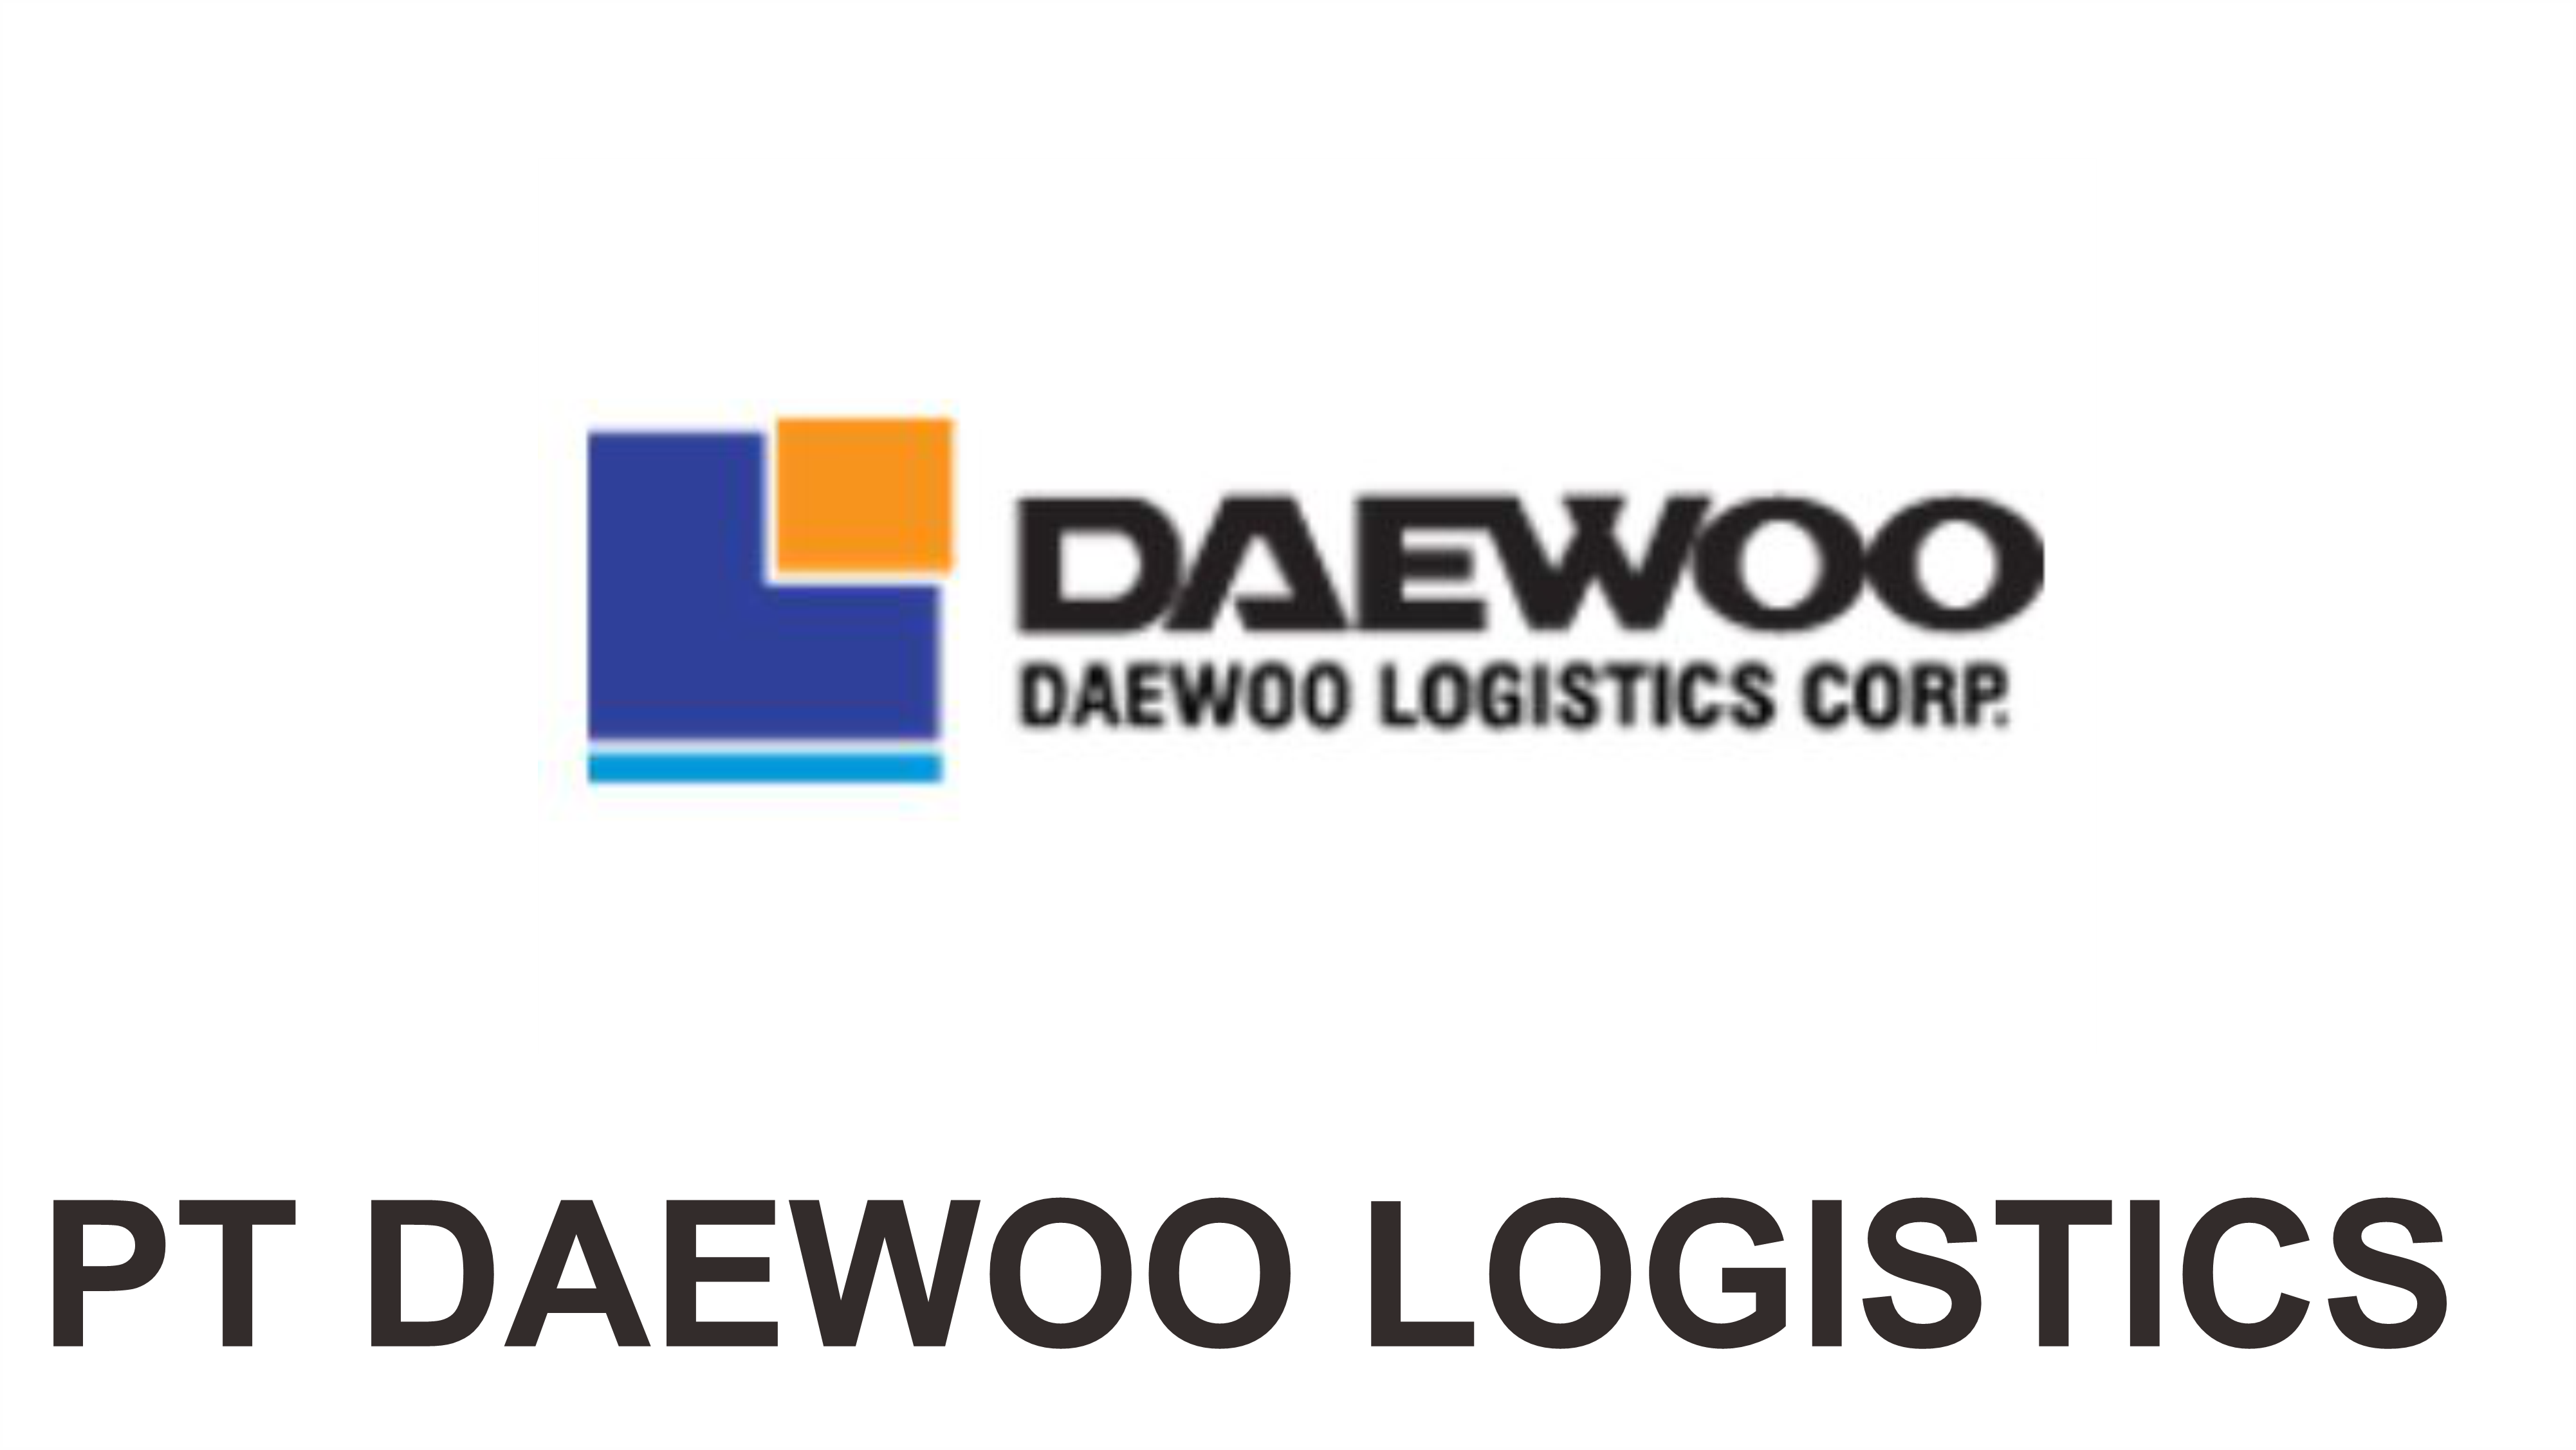 DAEWOO Logistics